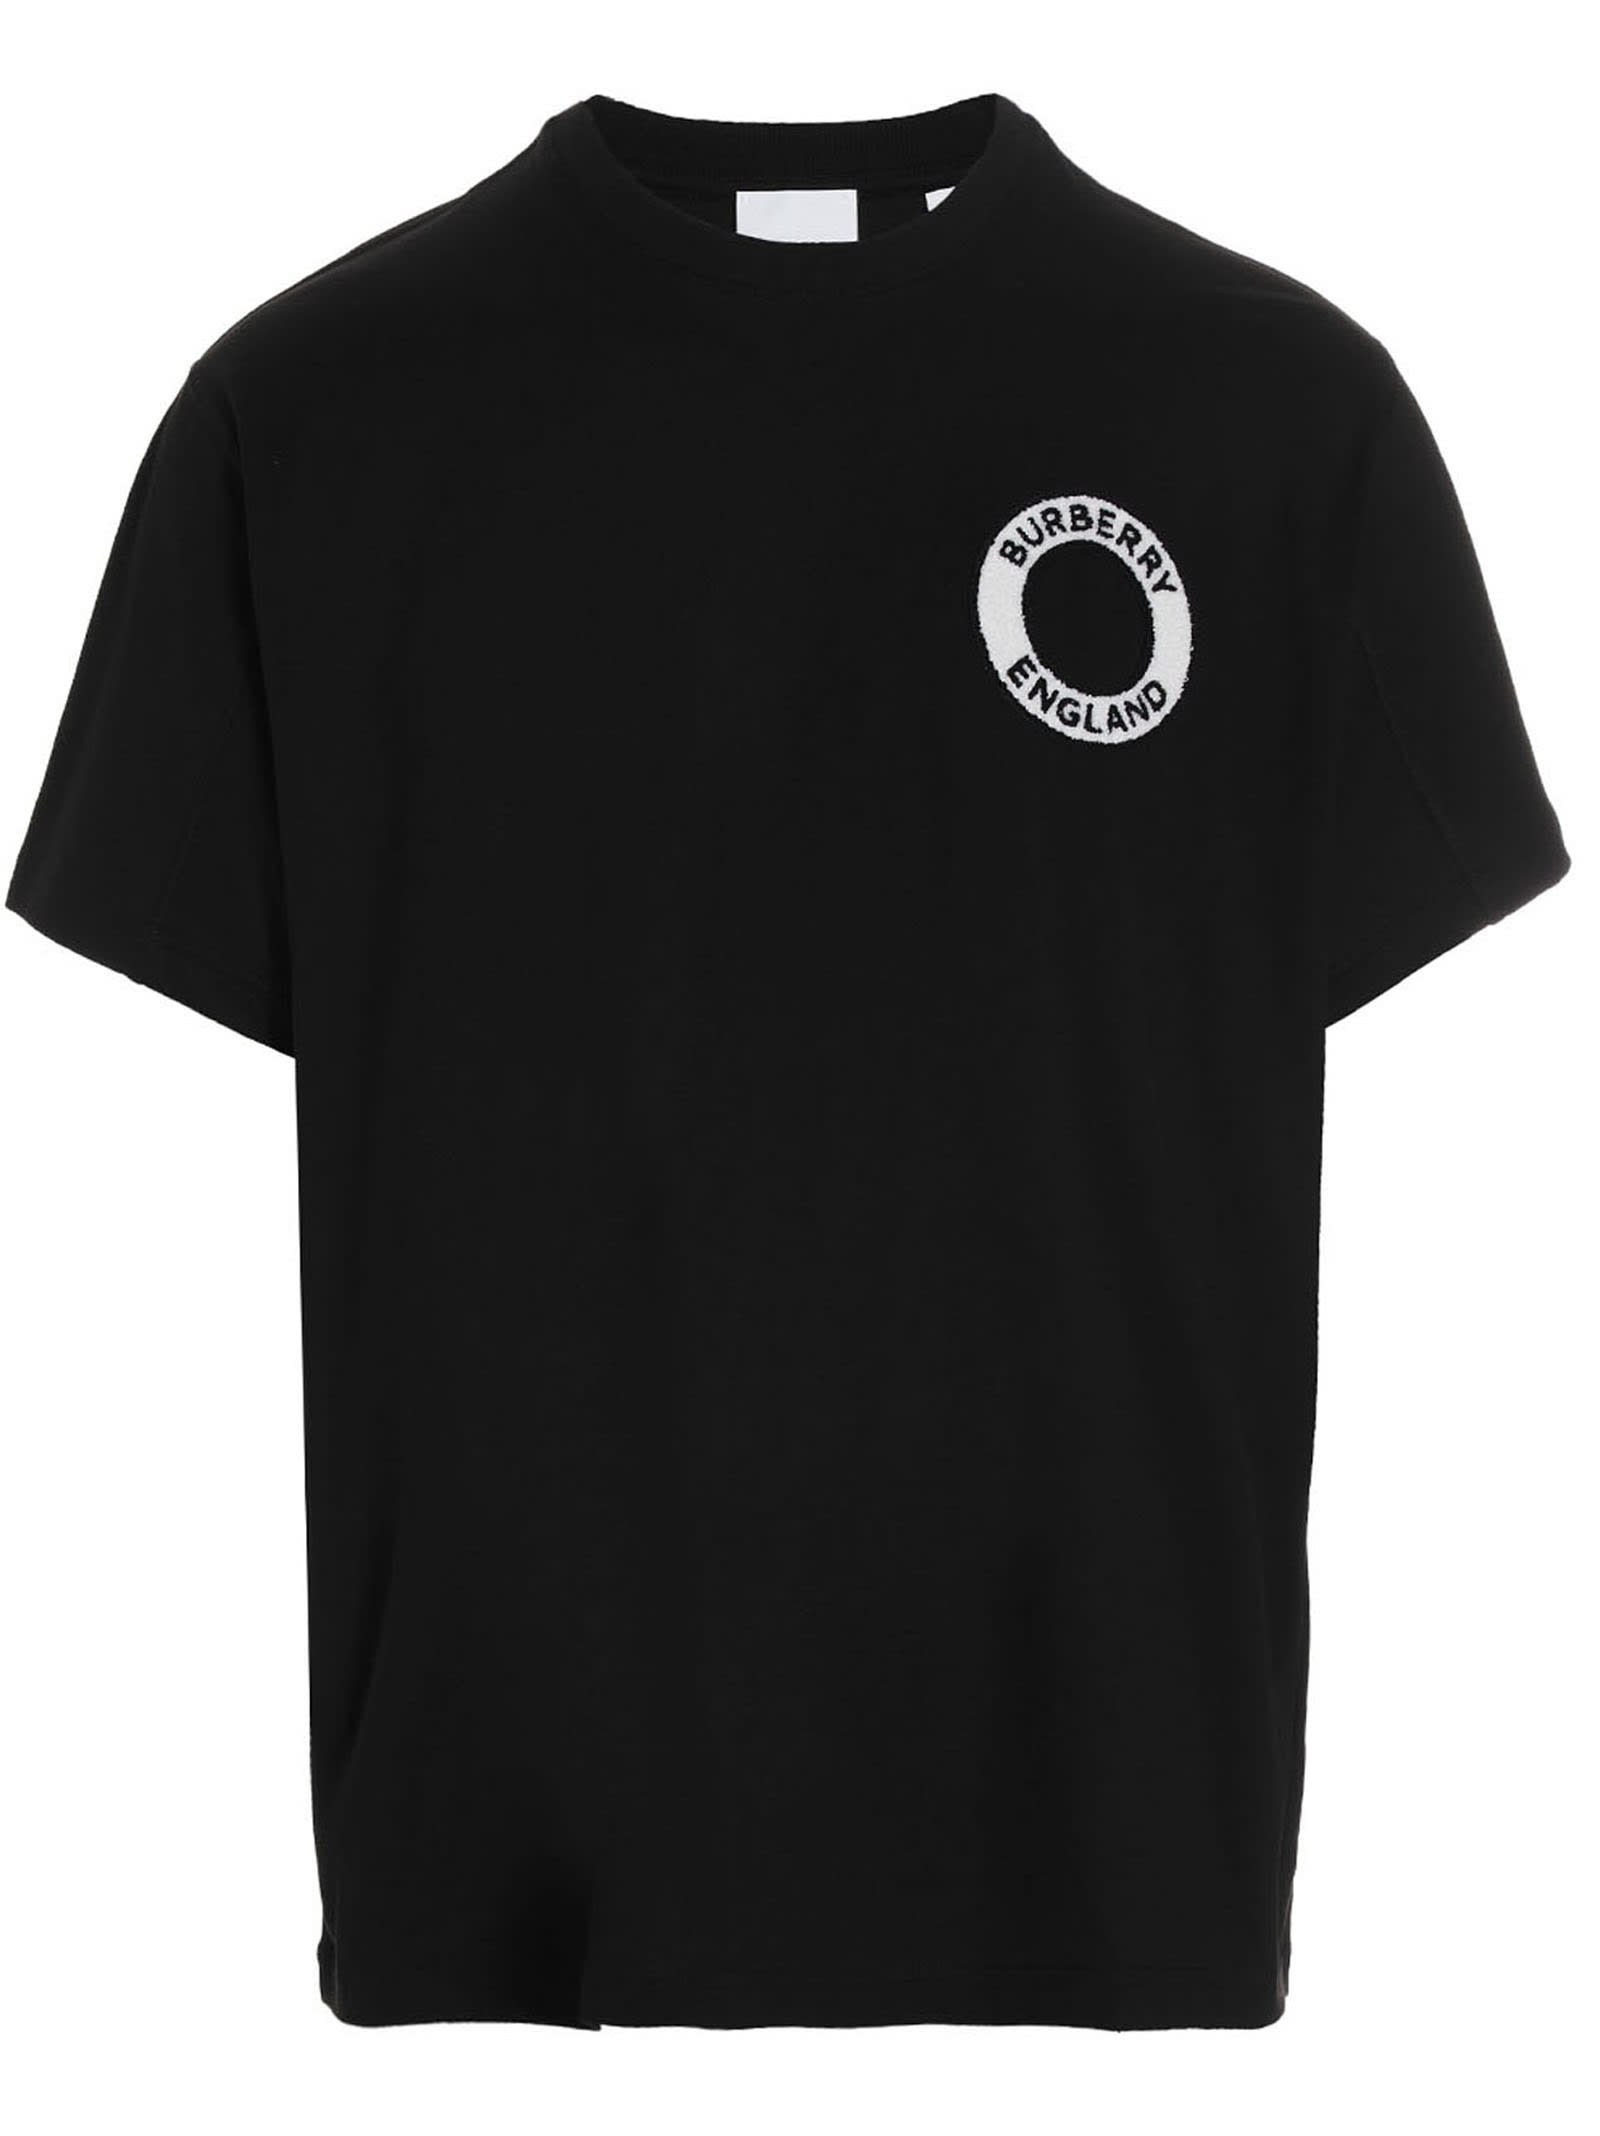 Burberry dundalk T-shirt